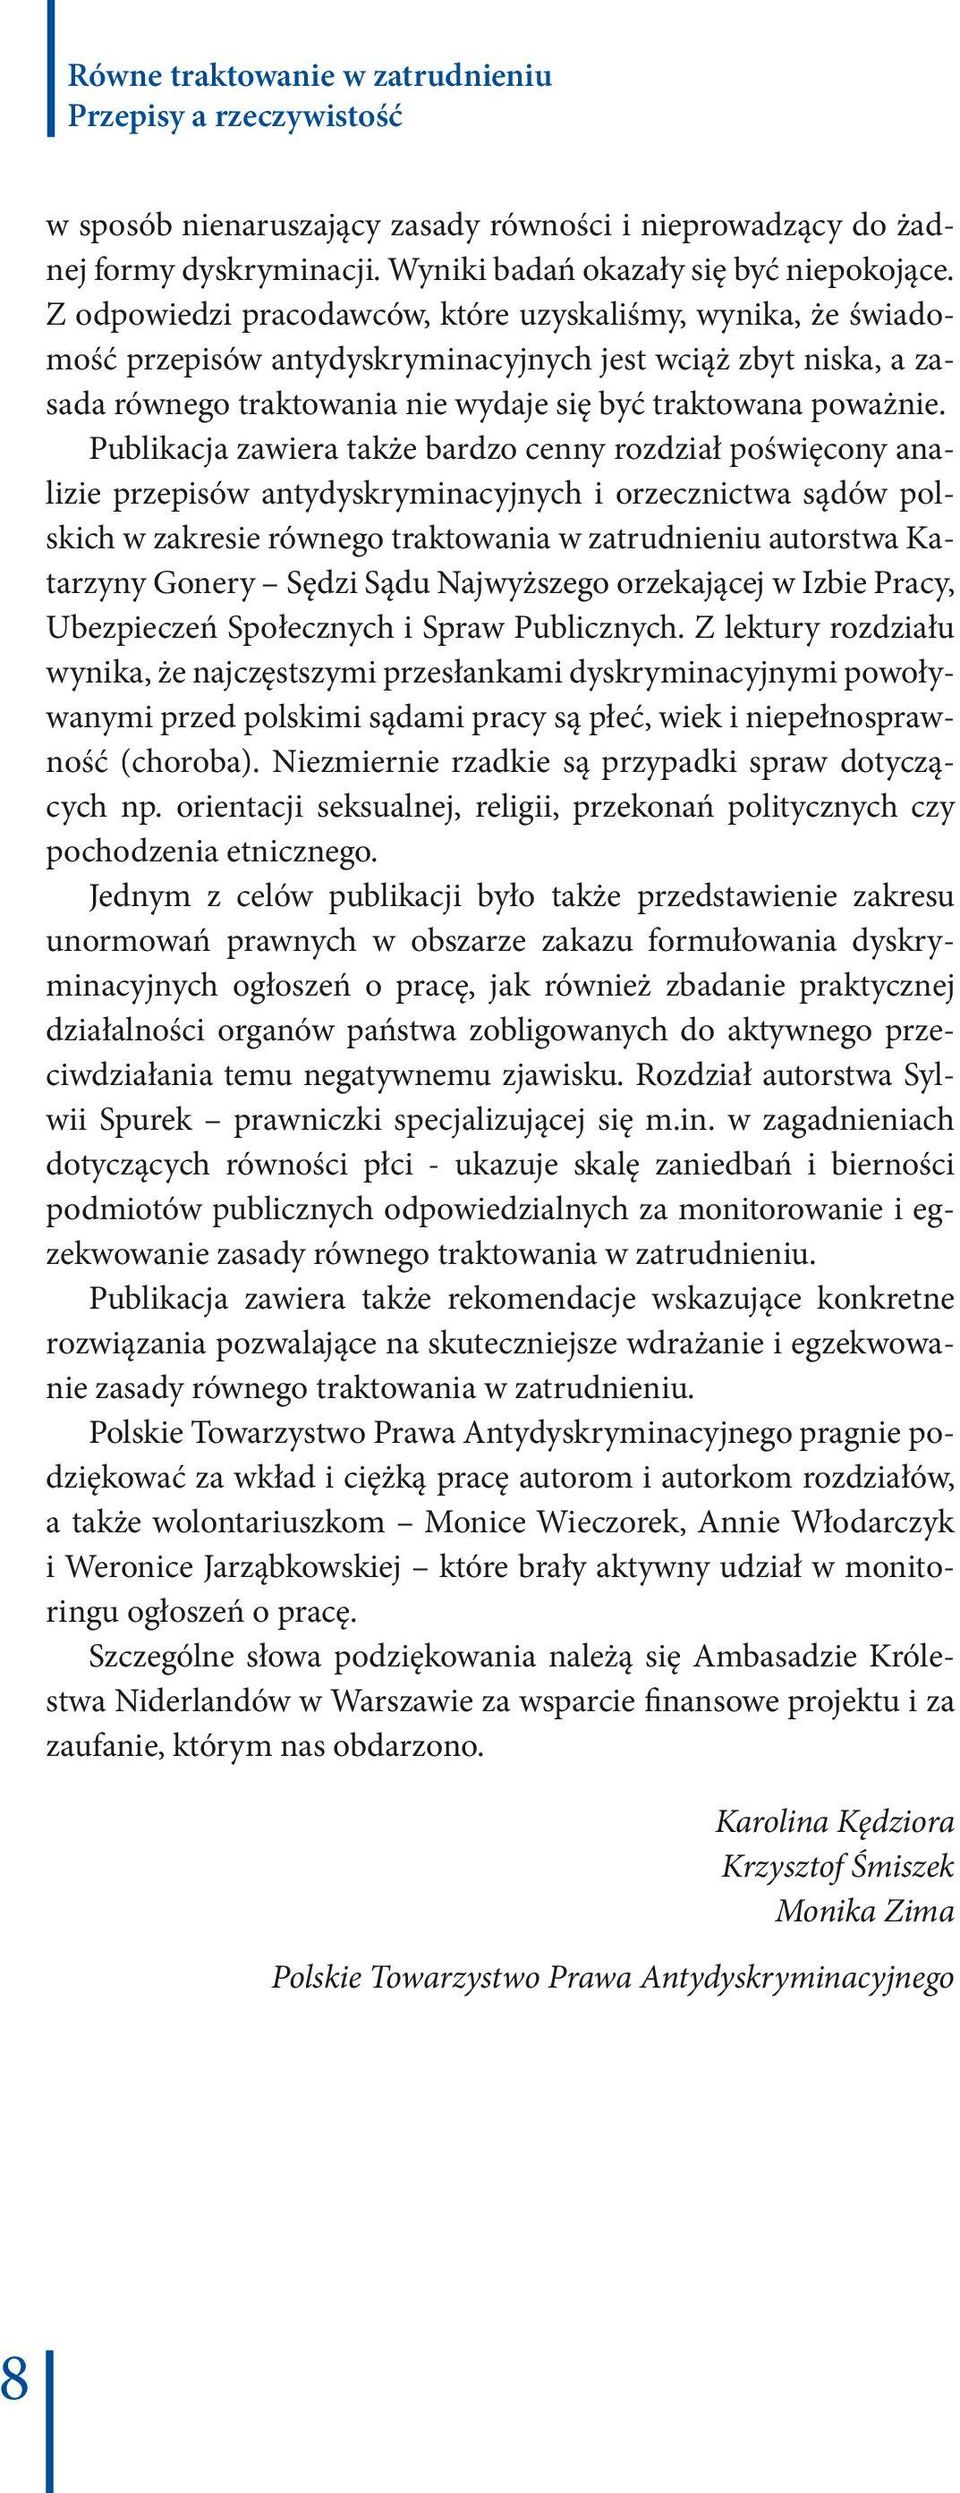 Publikacja zawiera także bardzo cenny rozdział poświęcony analizie przepisów antydyskryminacyjnych i orzecznictwa sądów polskich w zakresie równego traktowania w zatrudnieniu autorstwa Katarzyny